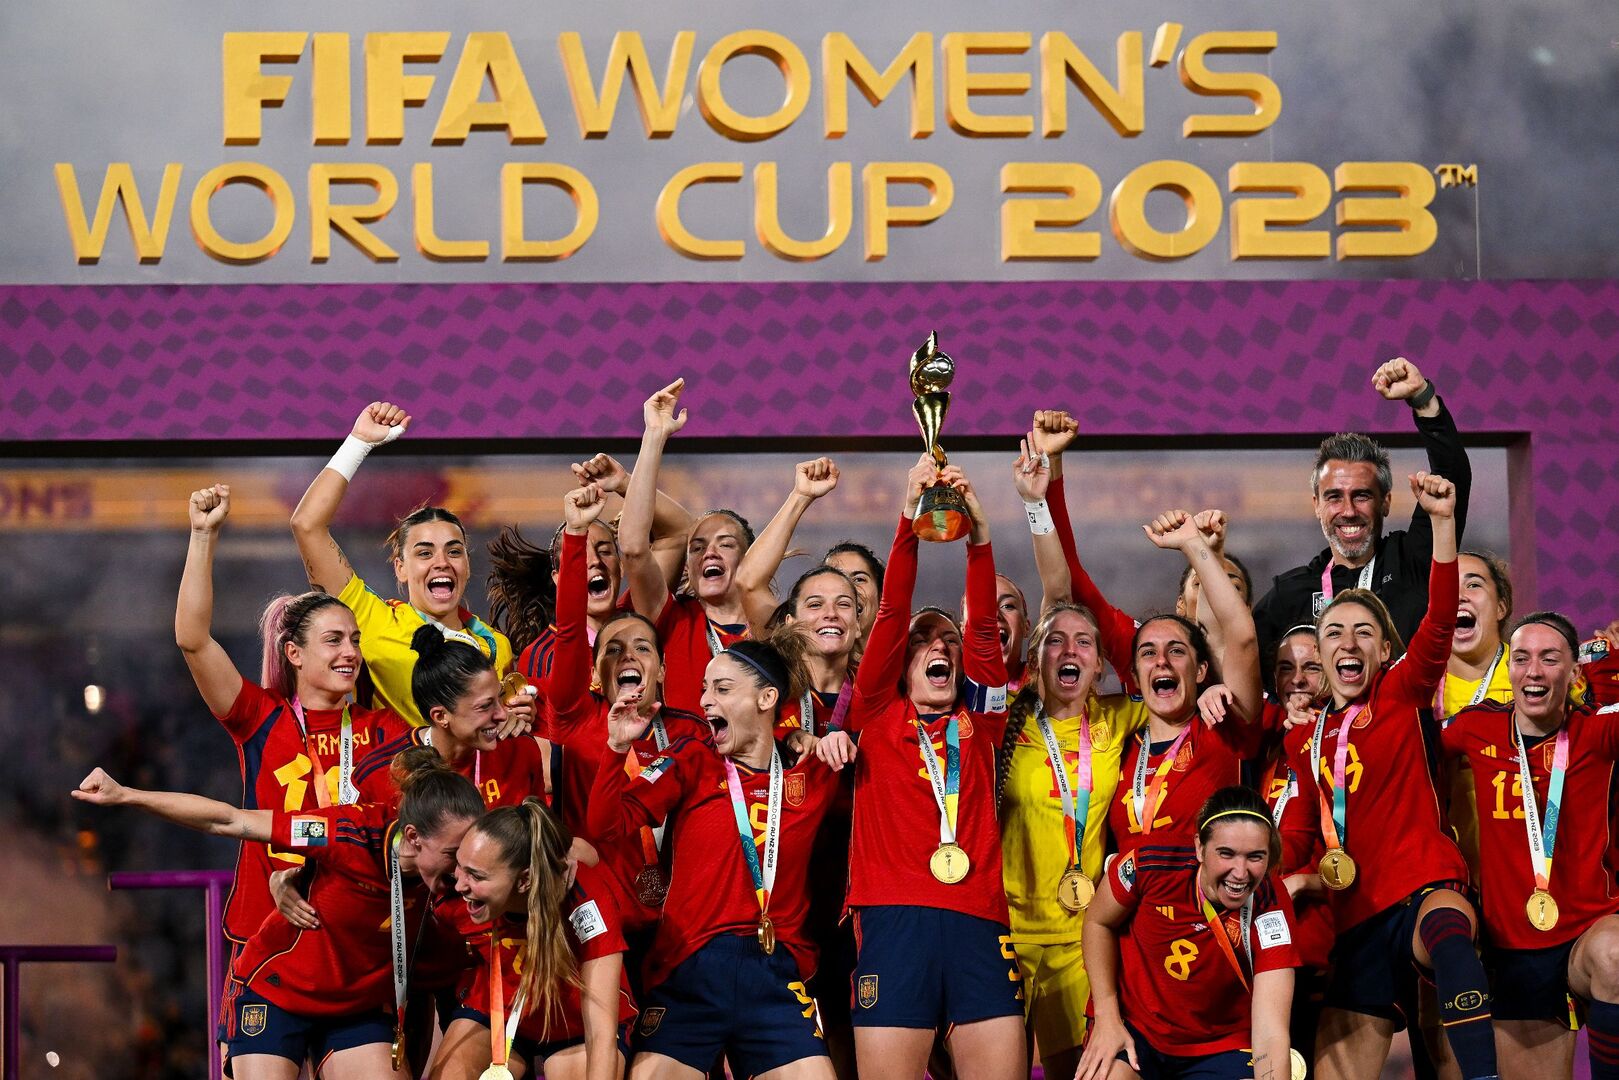 Las chicas del mundial femenino de fútbol cobraron 4,4 veces más que